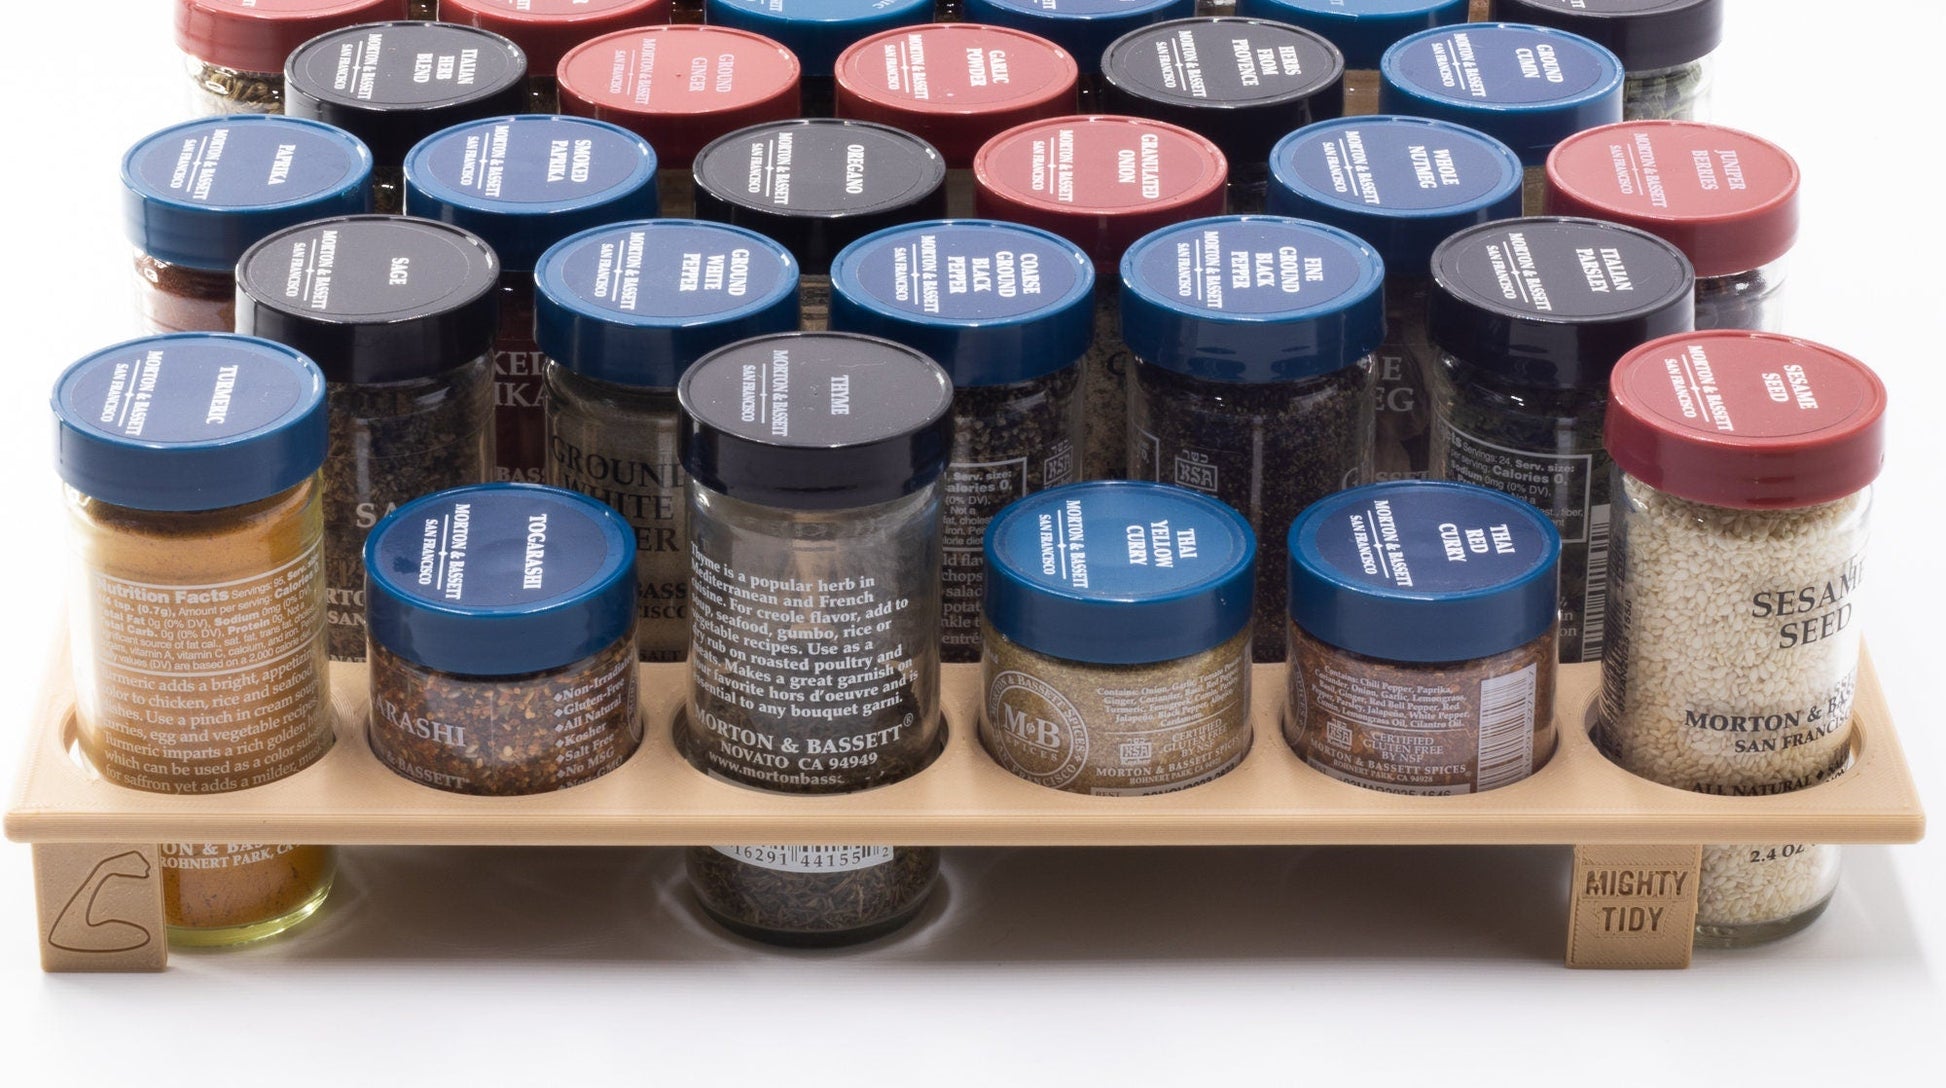 Fencesmart Spice Drawer Organisers for Kitchen, Non-Slip Storage